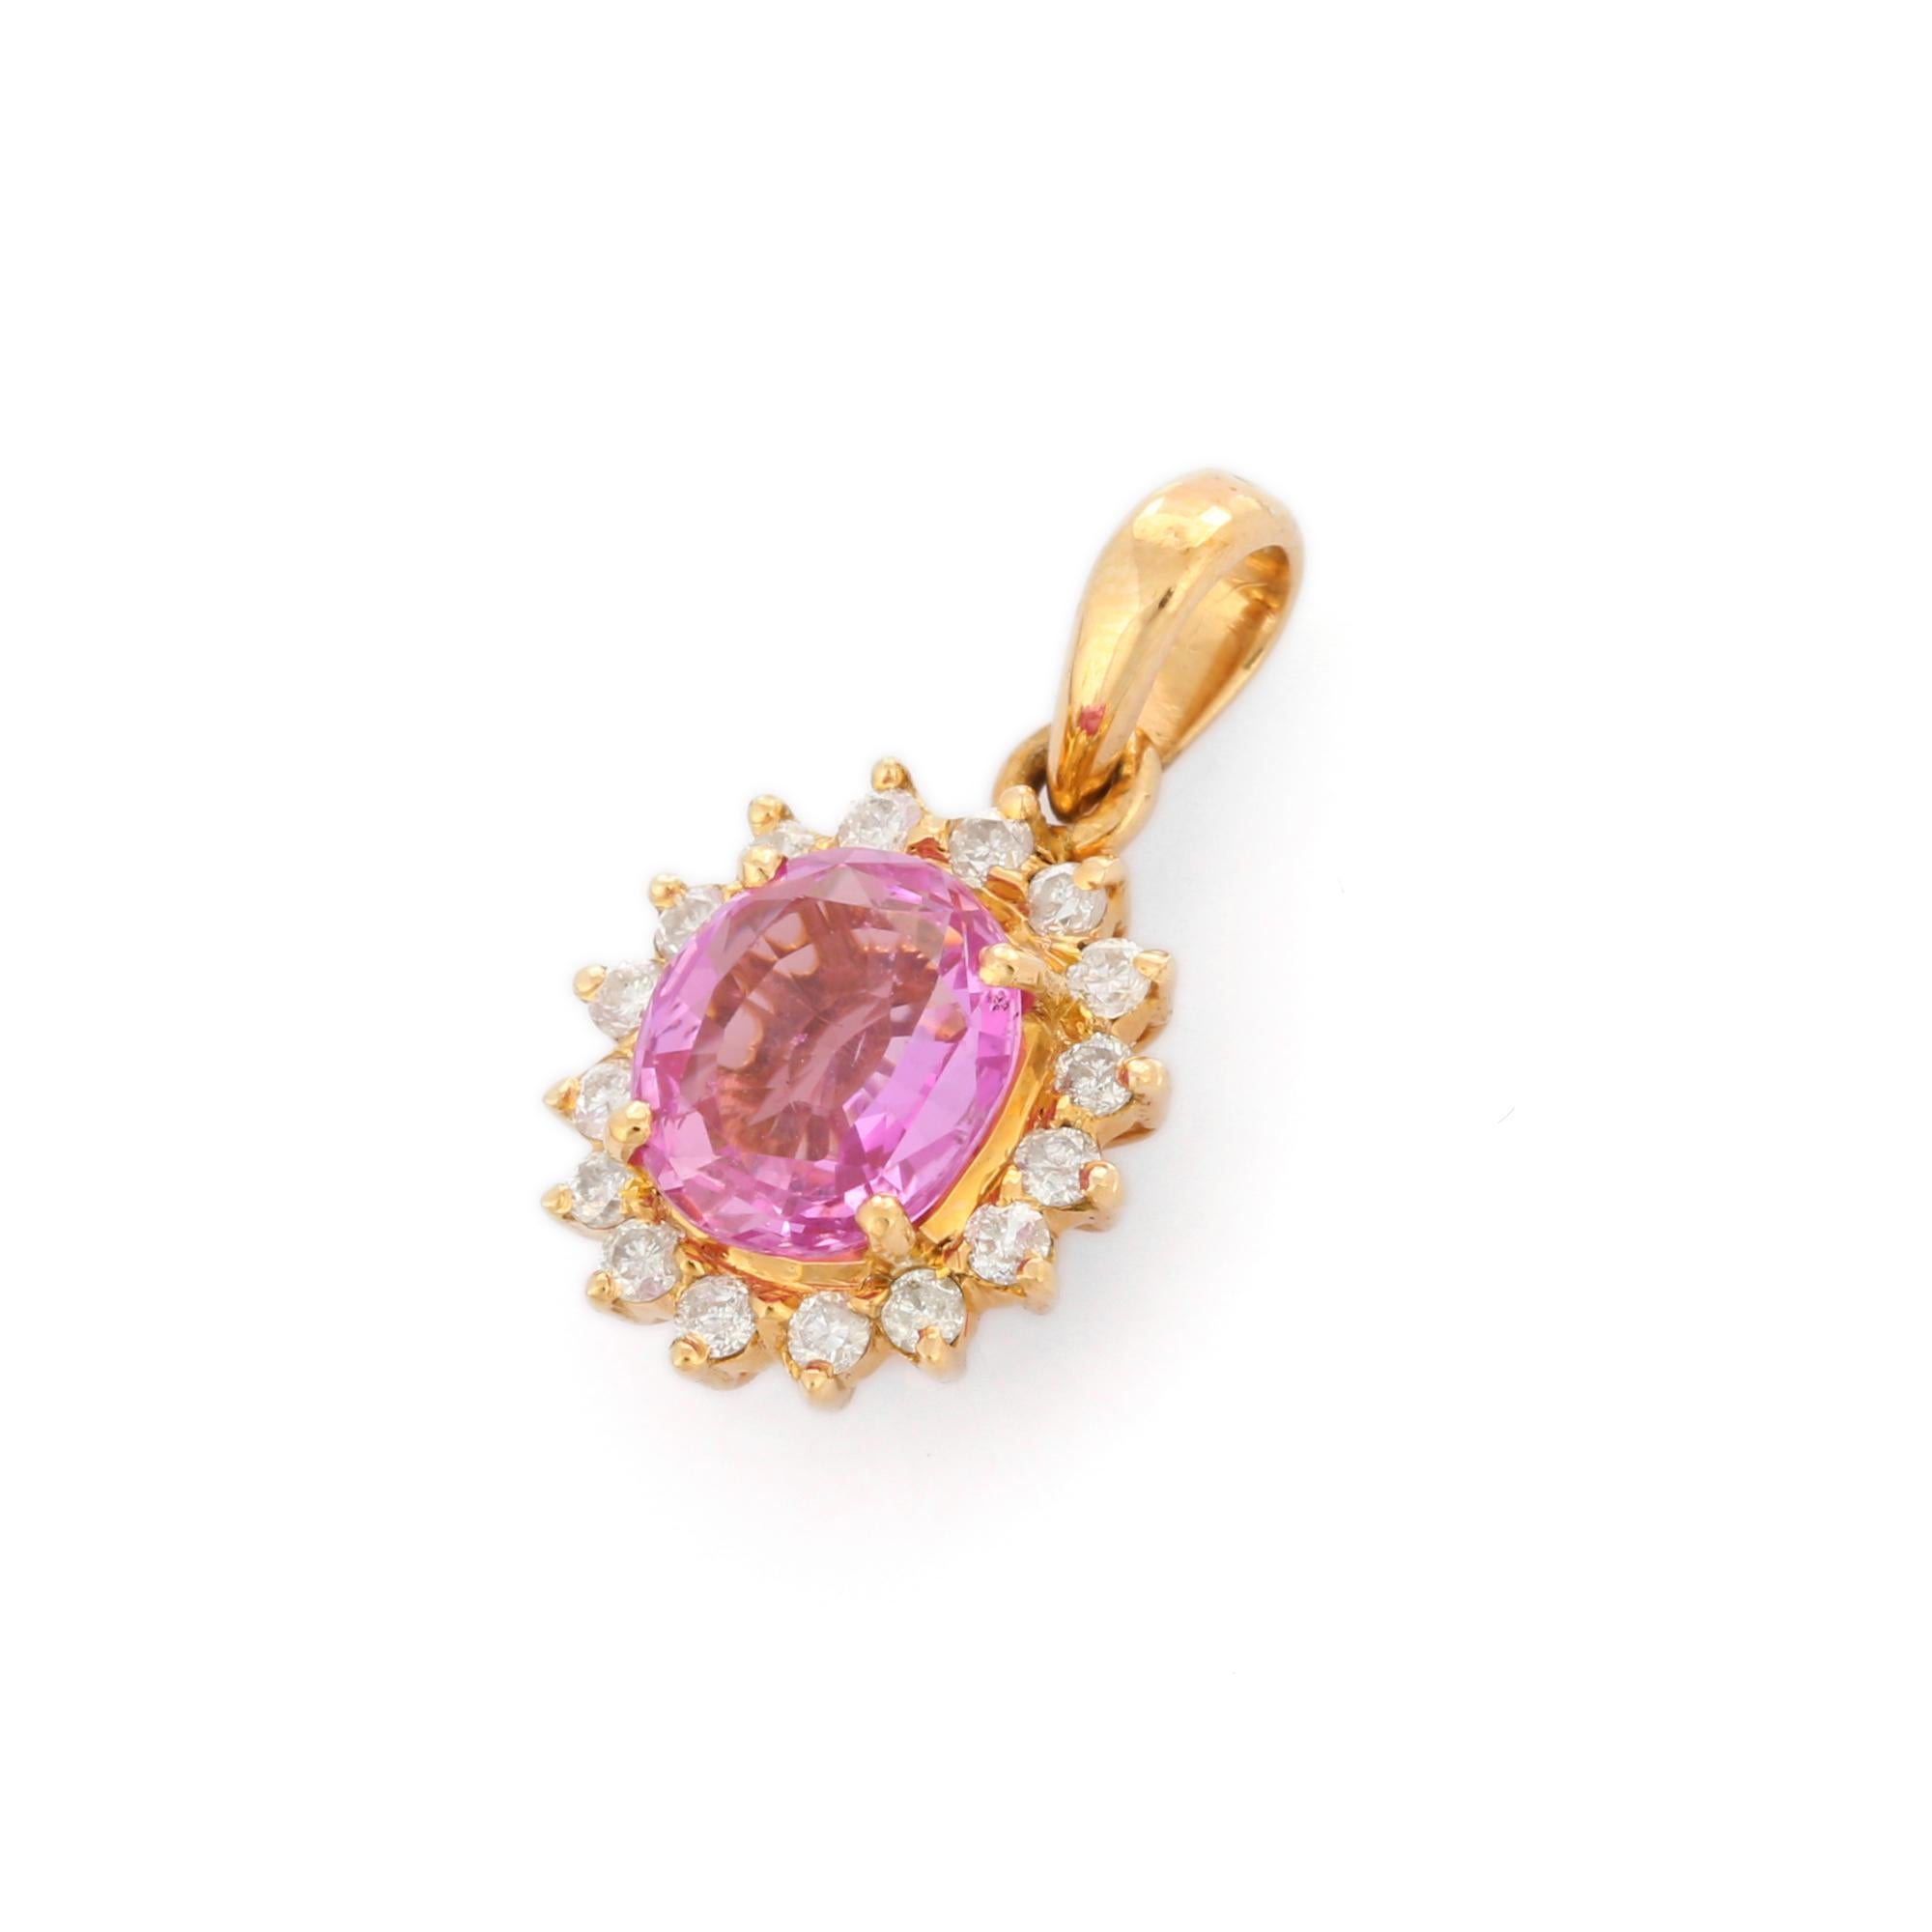 Pendentif en saphir rose et diamant halo en or 18K. Il comporte un saphir de taille ovale et des diamants qui complètent votre look avec une touche décente. Les pendentifs sont utilisés pour être portés ou offerts pour représenter l'amour et les